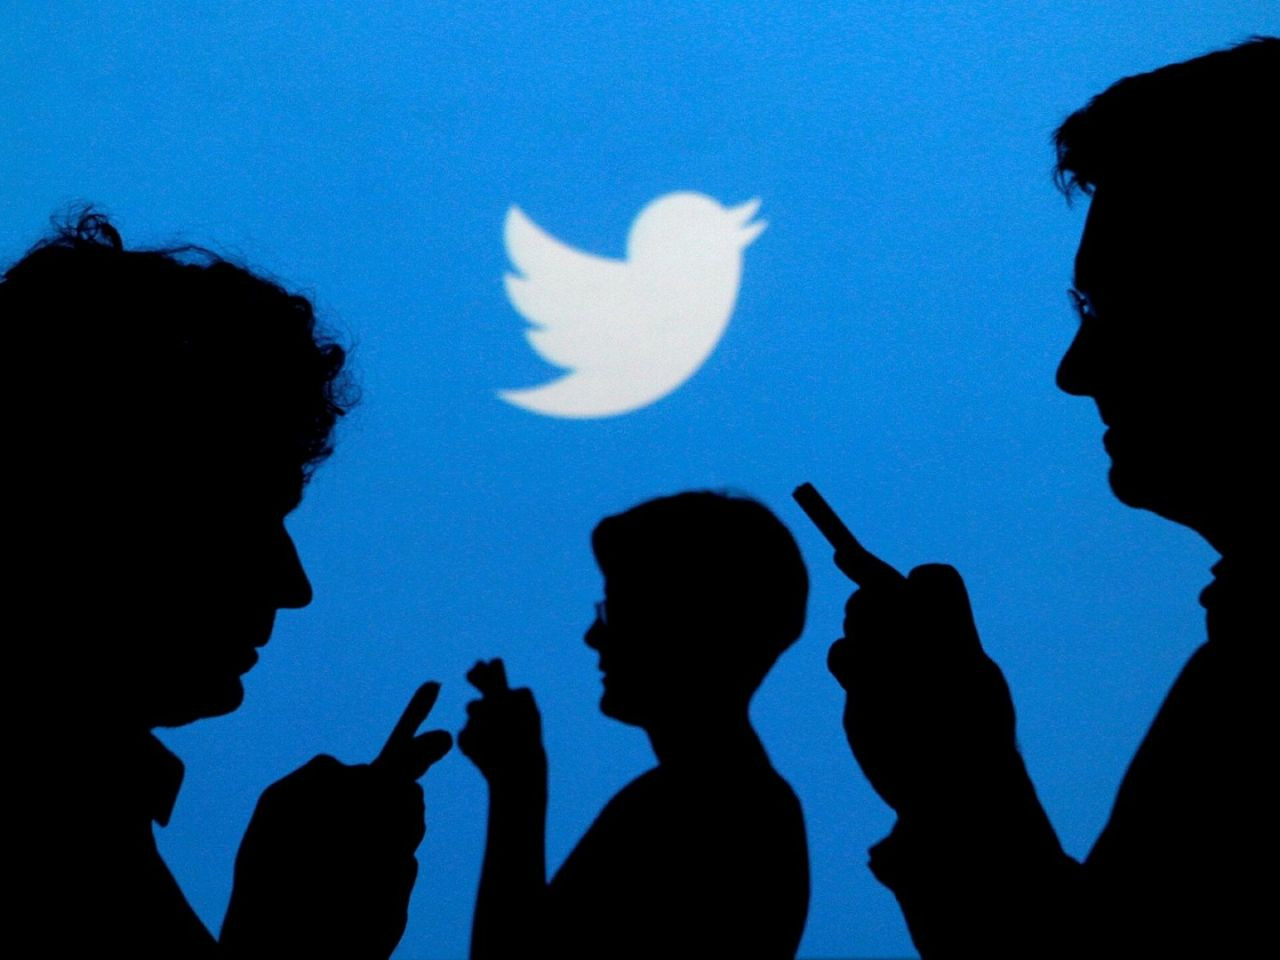 Türkiye, Twitter'da en çok kimi konuştu? İşte Twitter'ın 2021 verileri... - Sayfa 1